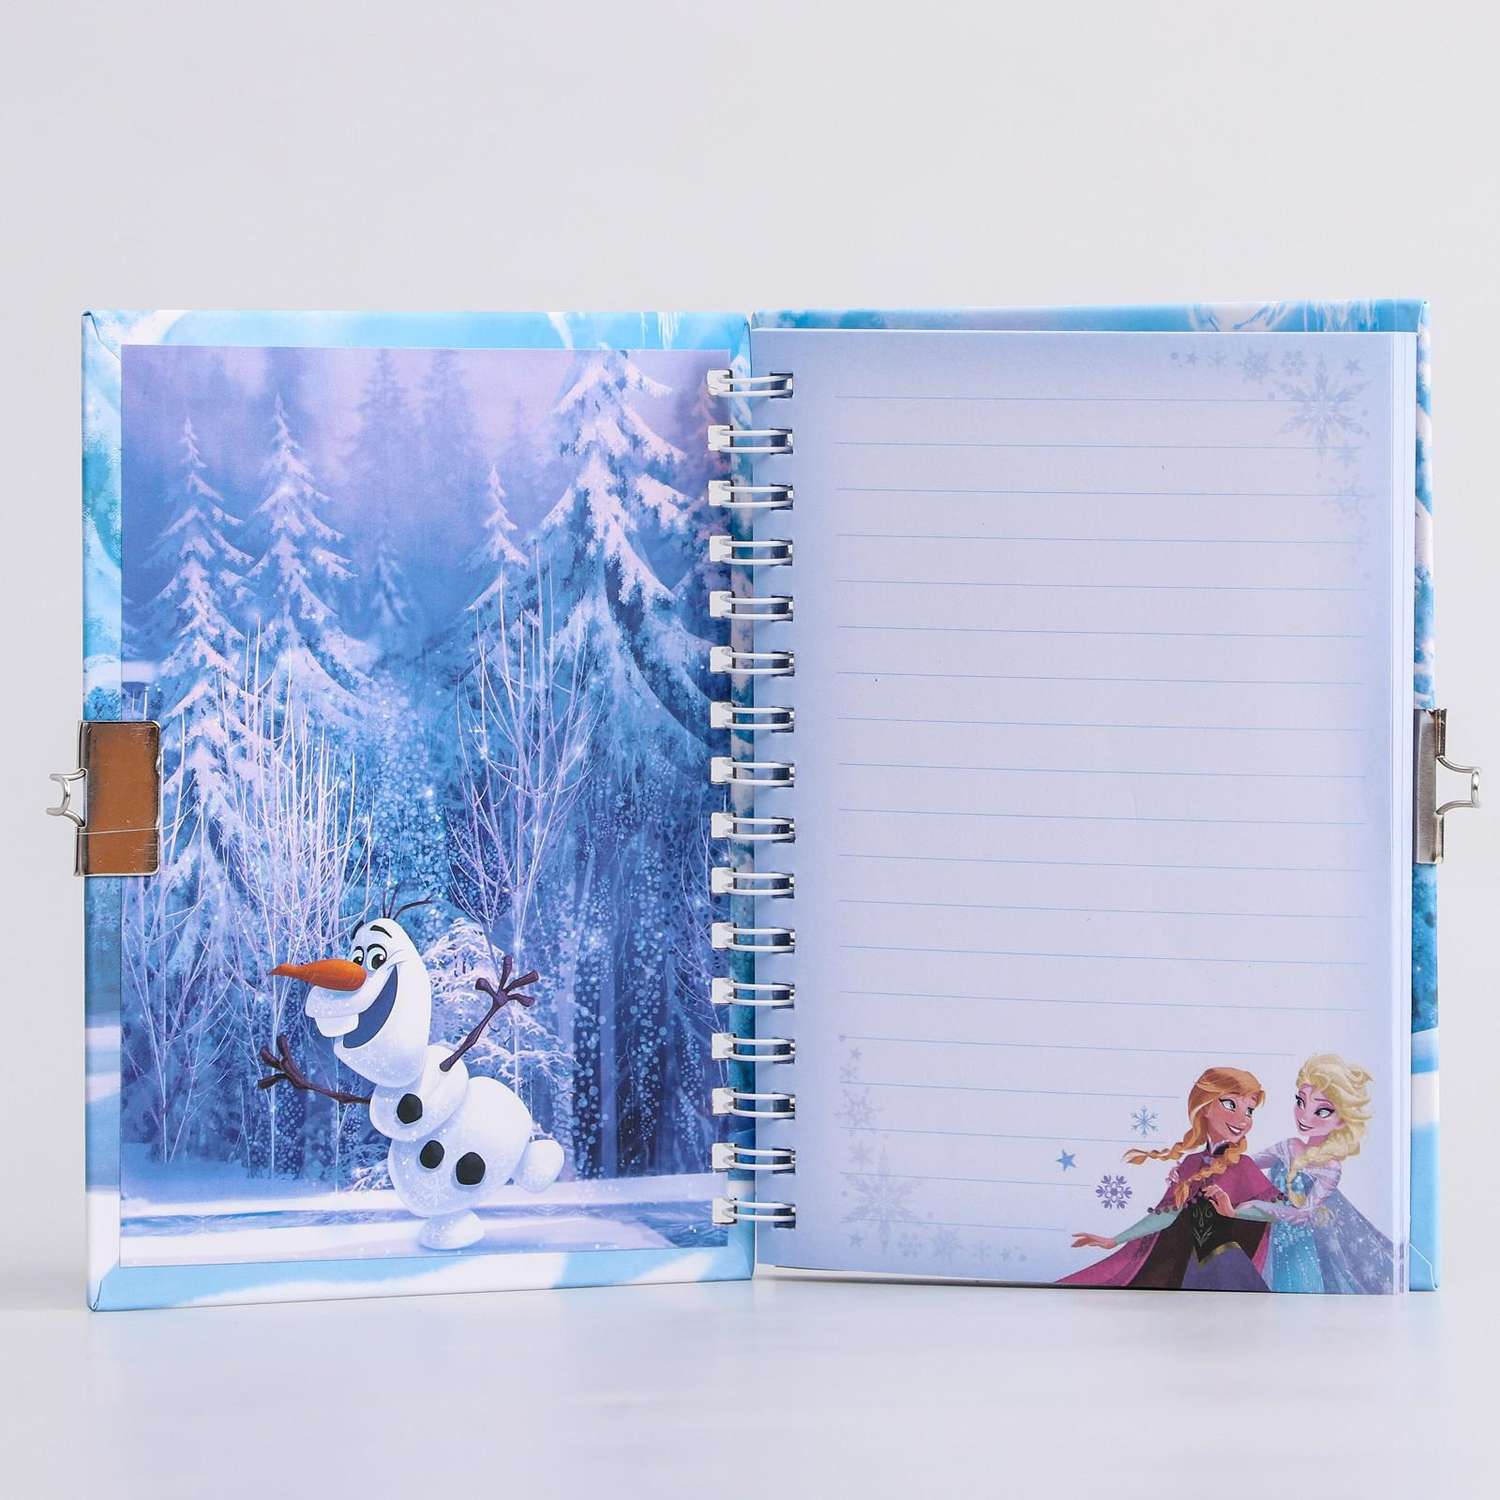 Записная книжка Disney на замочке Мой дневник Холодное сердце Disney - фото 2